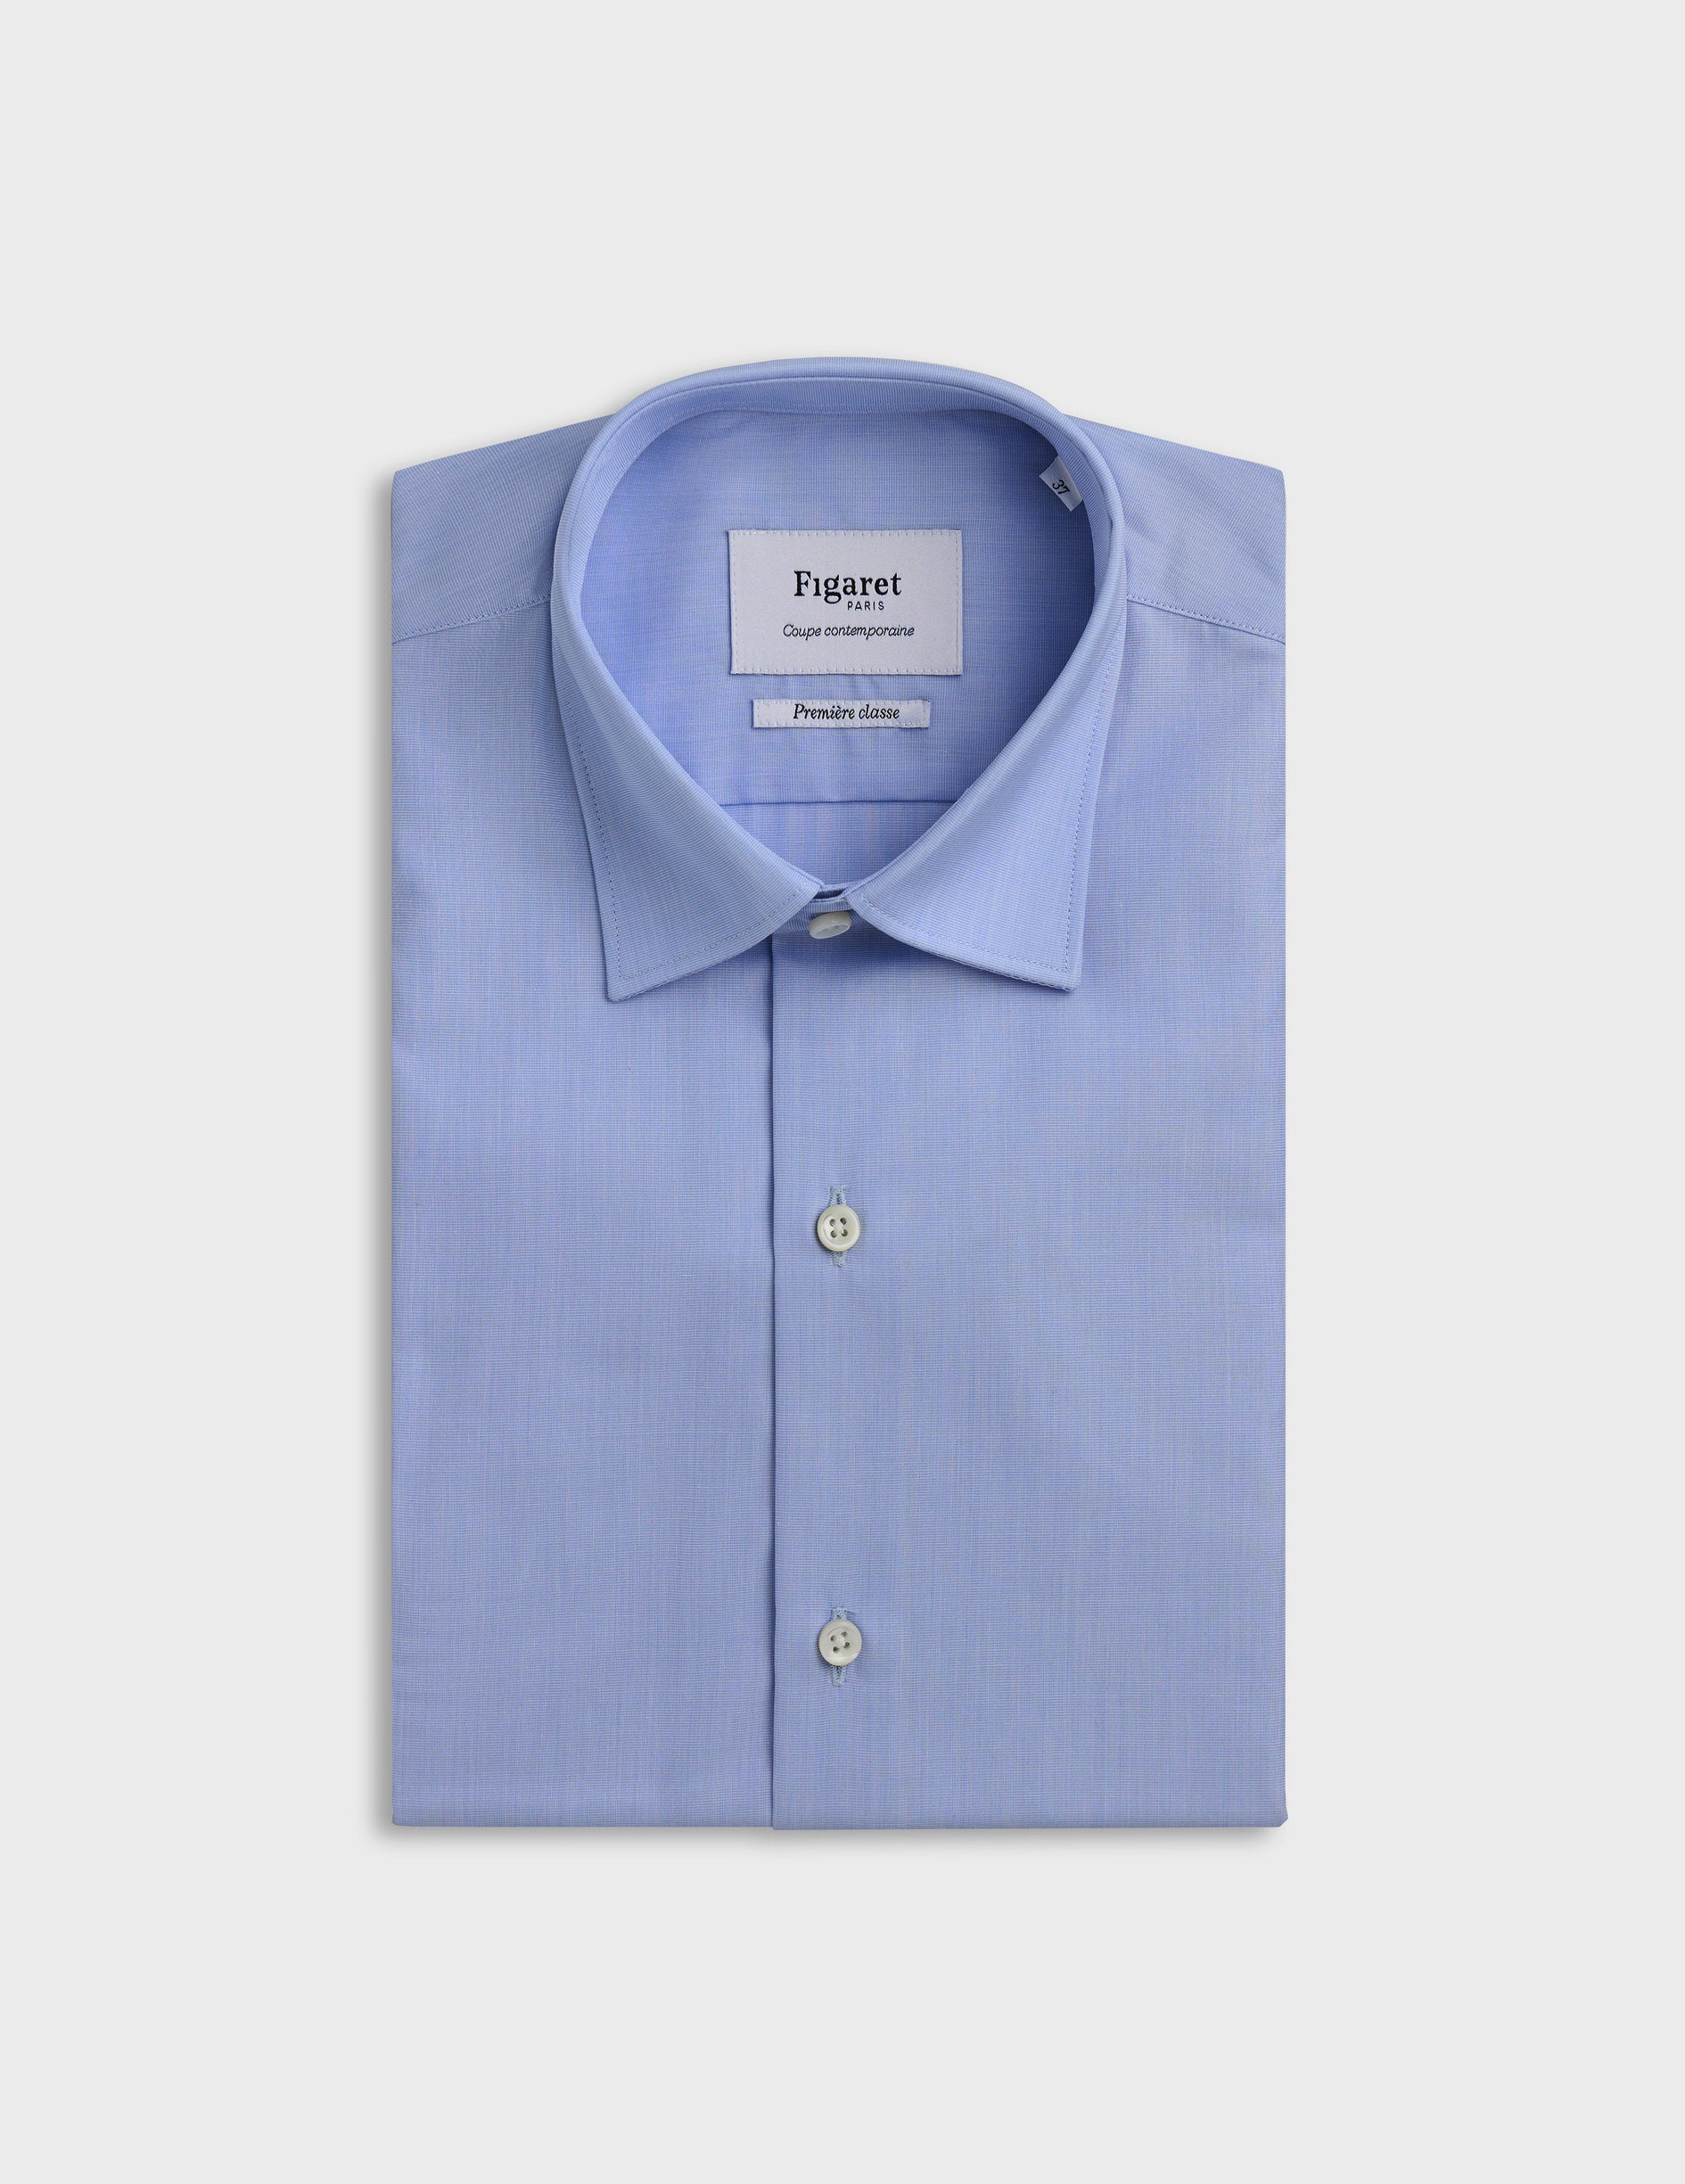 Chemise Semi-ajustée Infroissable bleue - Fil-à-fil - Col Figaret